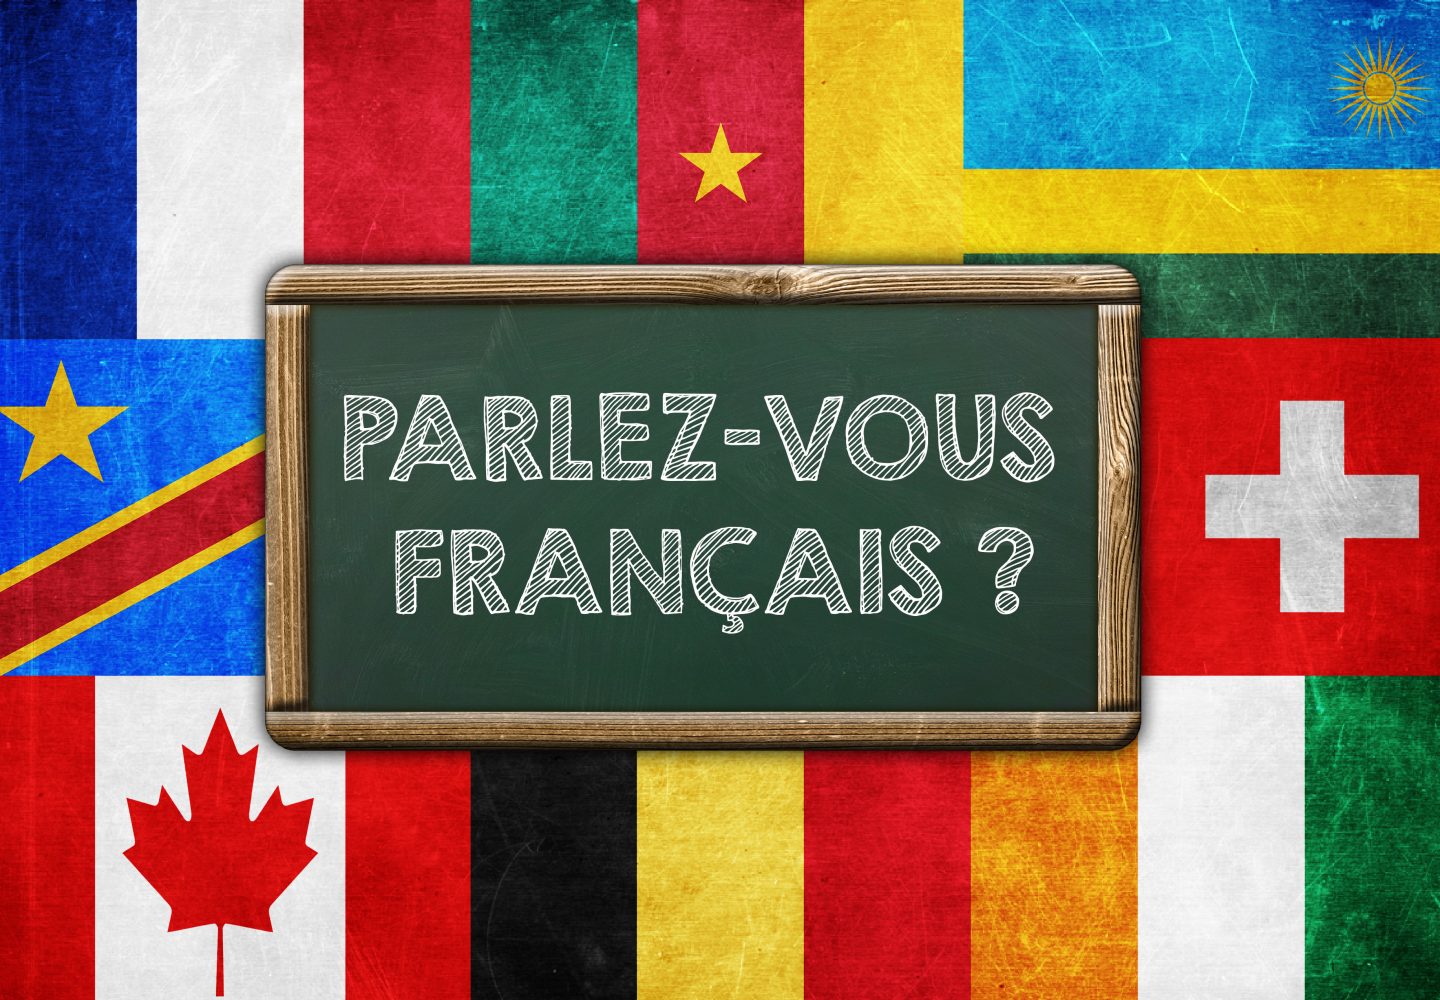 Parlez-vous francais?